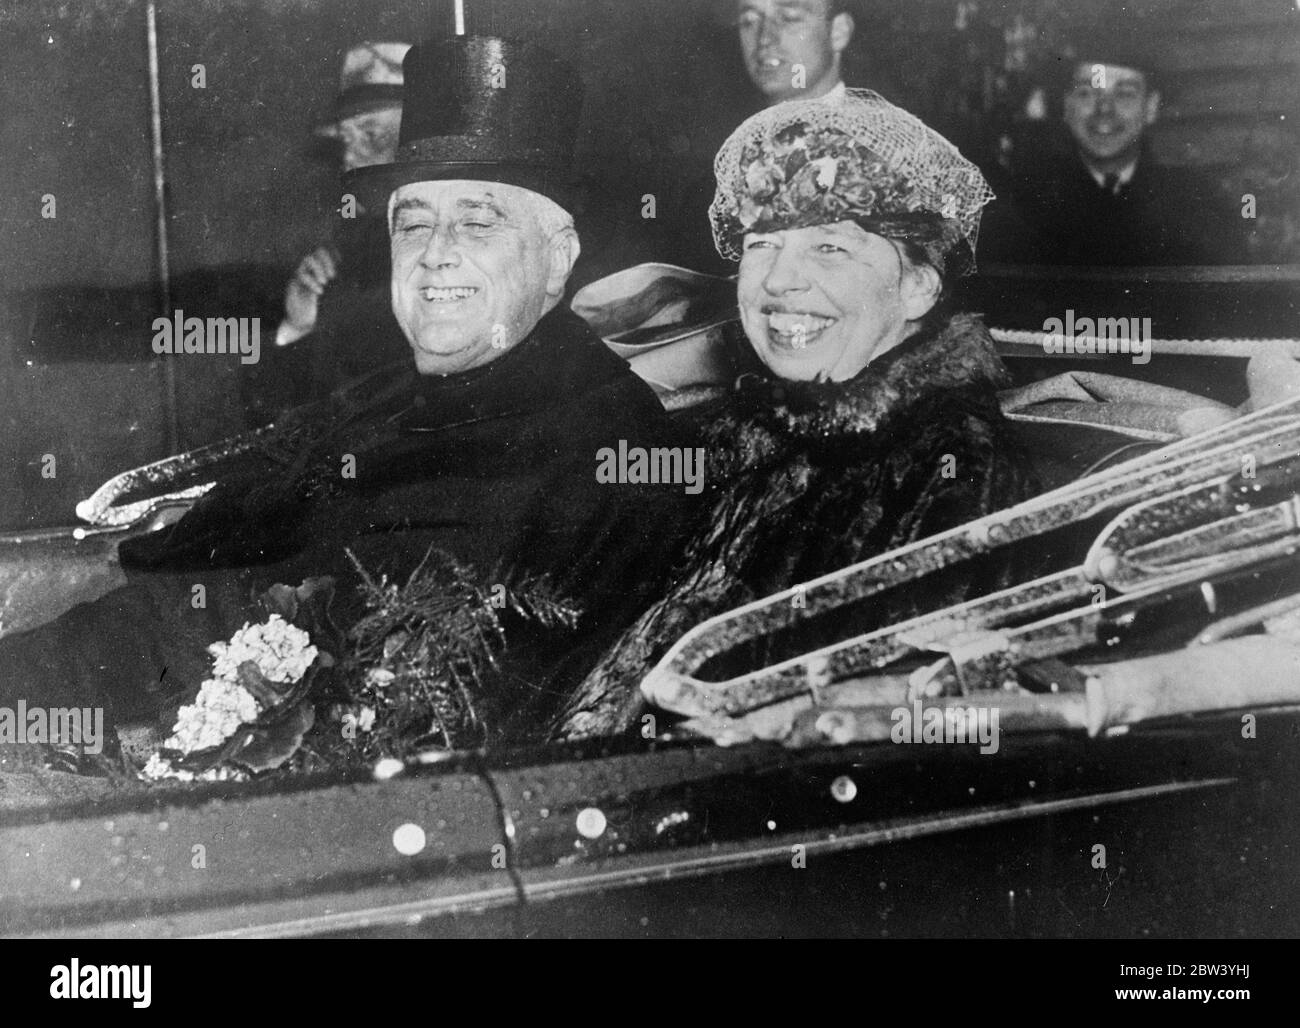 Le sourire de Spowelts se brise par la pluie lors de l'inauguration . Bien que baigné par la forte pluie qui s'est répandu pendant la cérémonie , Pres Franklin D Roosevelt parvient à donner son célèbre sourire en prenant le serment à son inauguration pour son deuxième mandat de président des États-Unis . D'énormes foules ont représenté pendant des heures la capitale, Washington , DC , pour entendre le discours inaugural . Les séances photos , le président Roosevelt et Mme Roosevelt ont pris du sourire en renversant à la Maison Blanche dans le déluge après l'inauguration . 27 janvier 1937 Banque D'Images